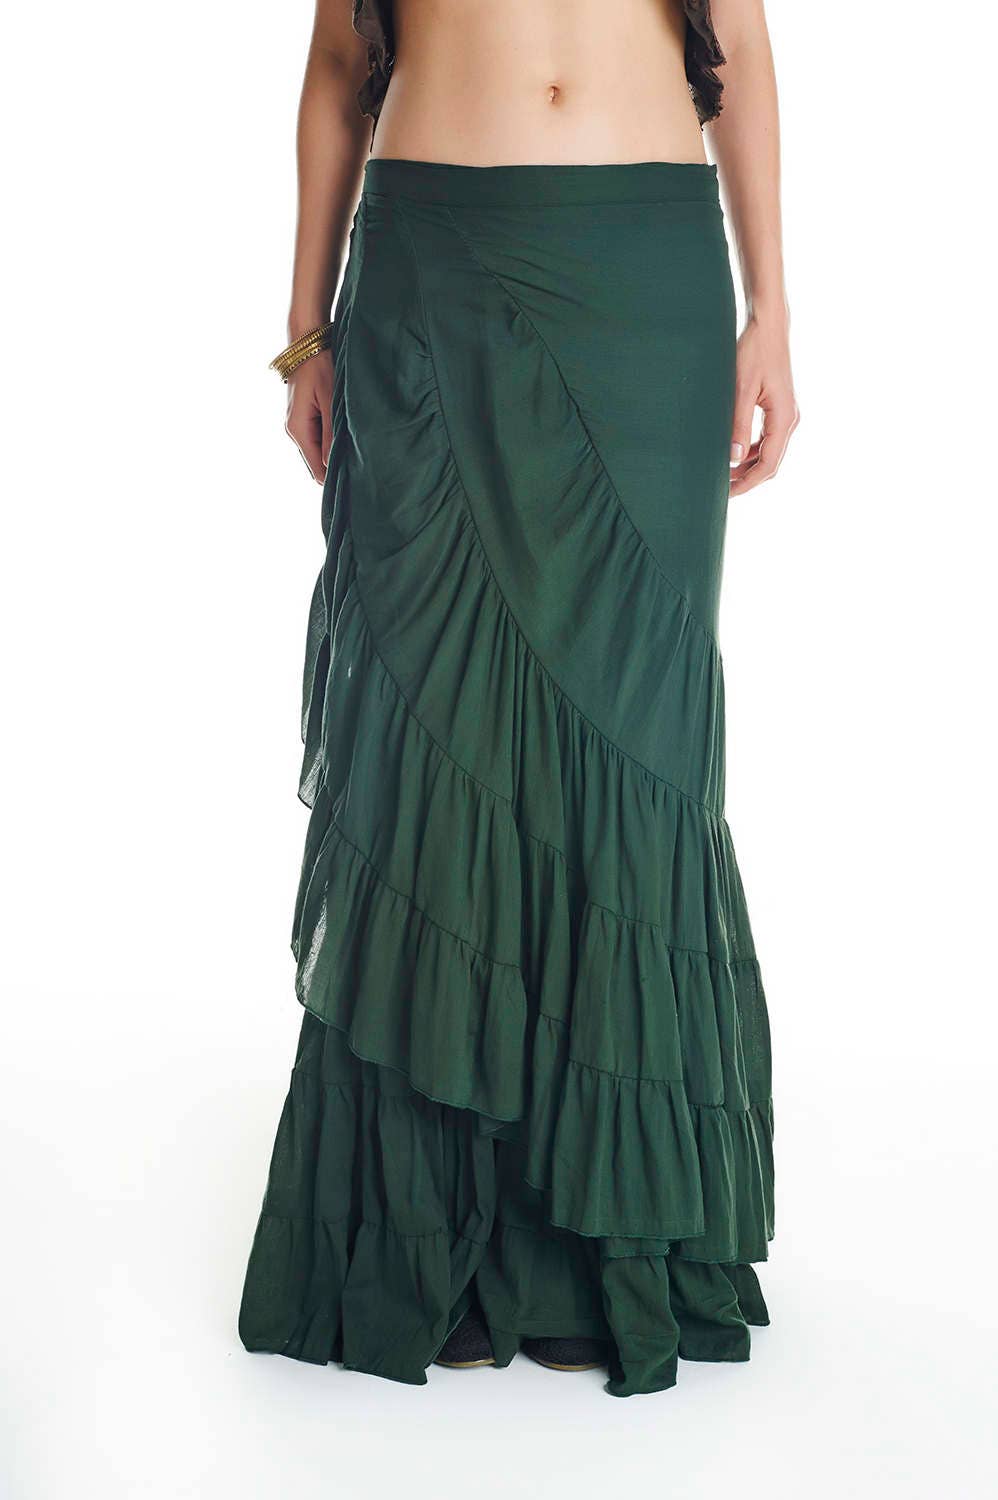 Gipsy skirt spanish skirt flamenco dance wrap skirt bohemian